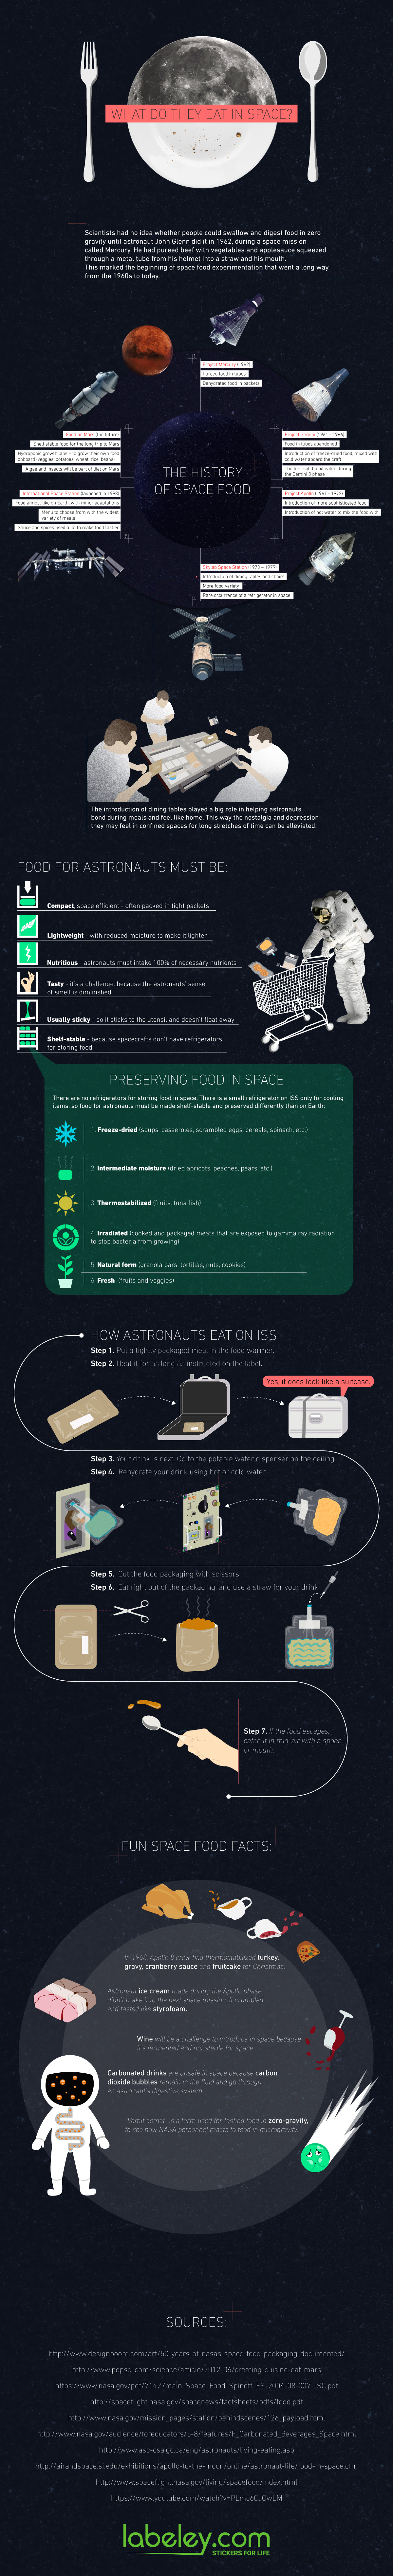 Infographic Eten in de ruimte verklaard 